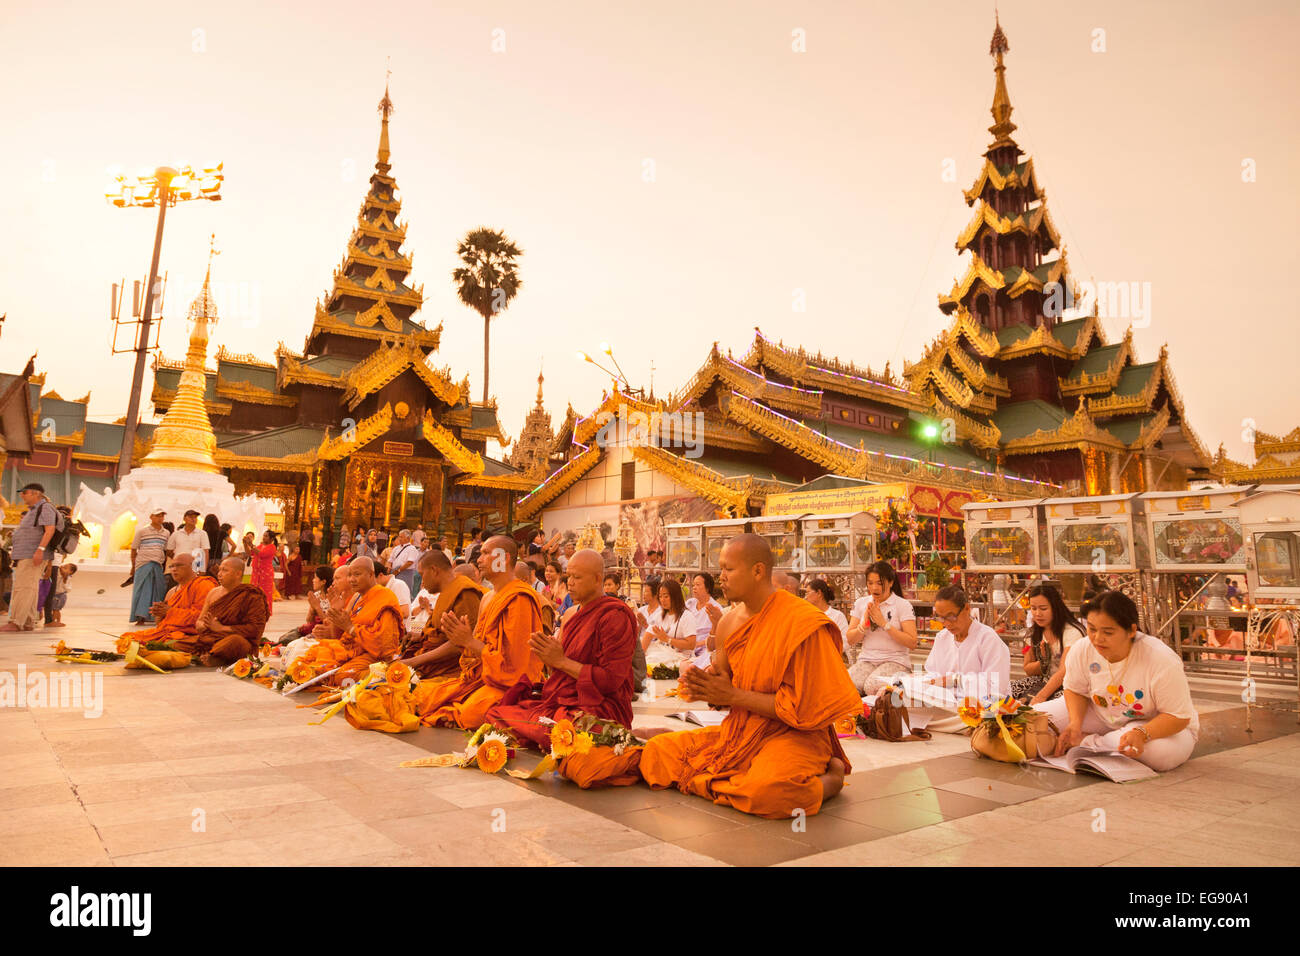 Les moines bouddhistes et les populations locales d'offices de la pagode Shwedagon, Yangon, Myanmar ( Birmanie ), l'Asie Banque D'Images